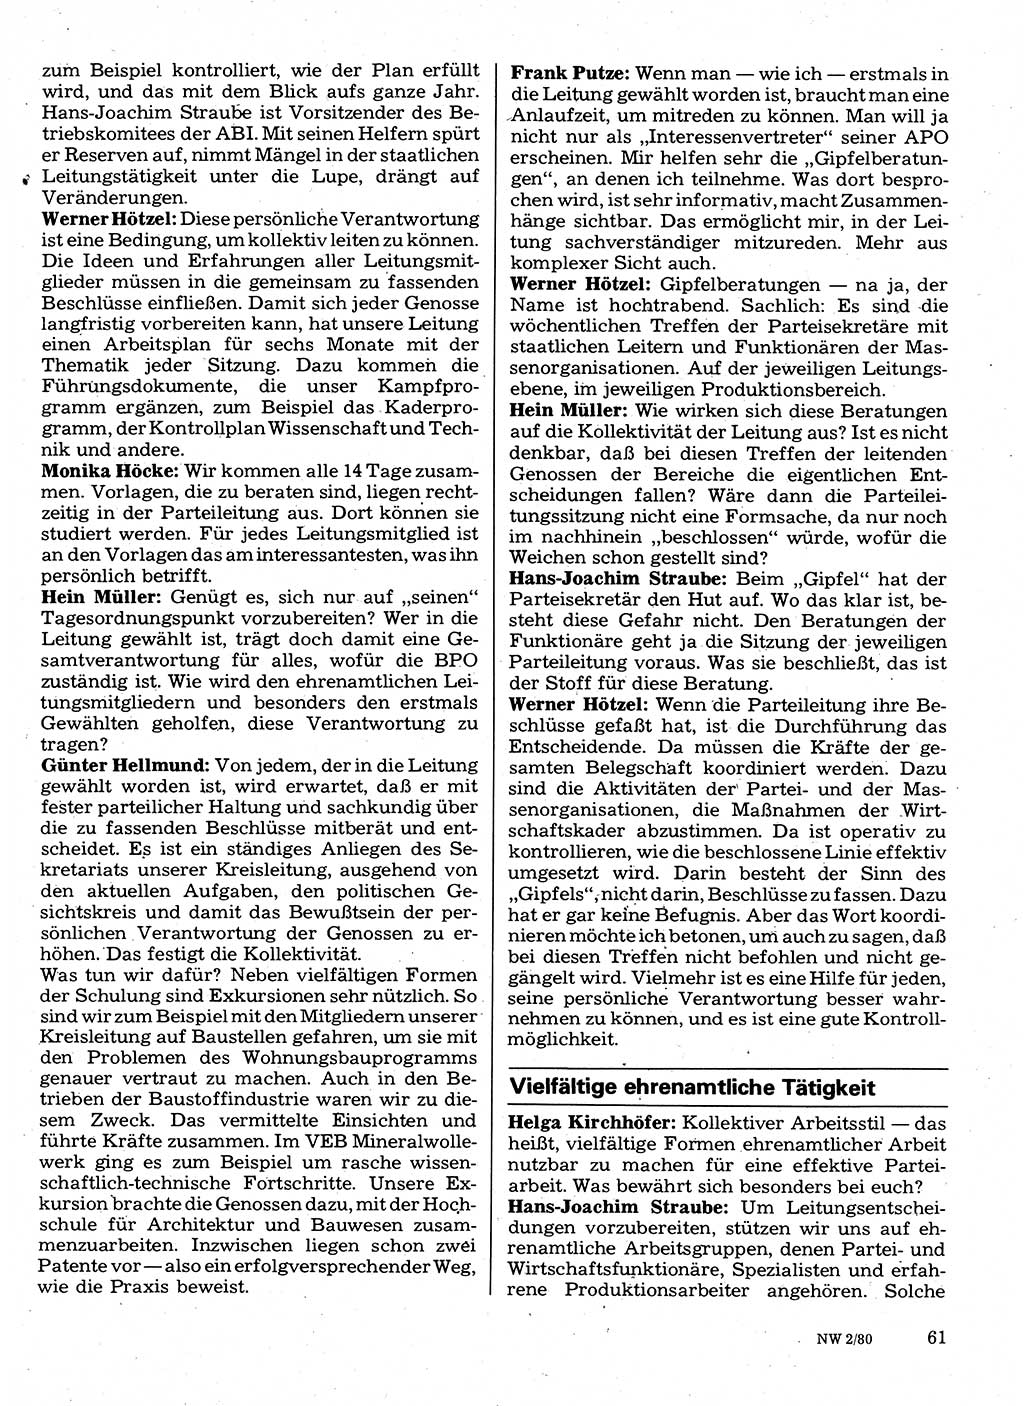 Neuer Weg (NW), Organ des Zentralkomitees (ZK) der SED (Sozialistische Einheitspartei Deutschlands) für Fragen des Parteilebens, 35. Jahrgang [Deutsche Demokratische Republik (DDR)] 1980, Seite 61 (NW ZK SED DDR 1980, S. 61)